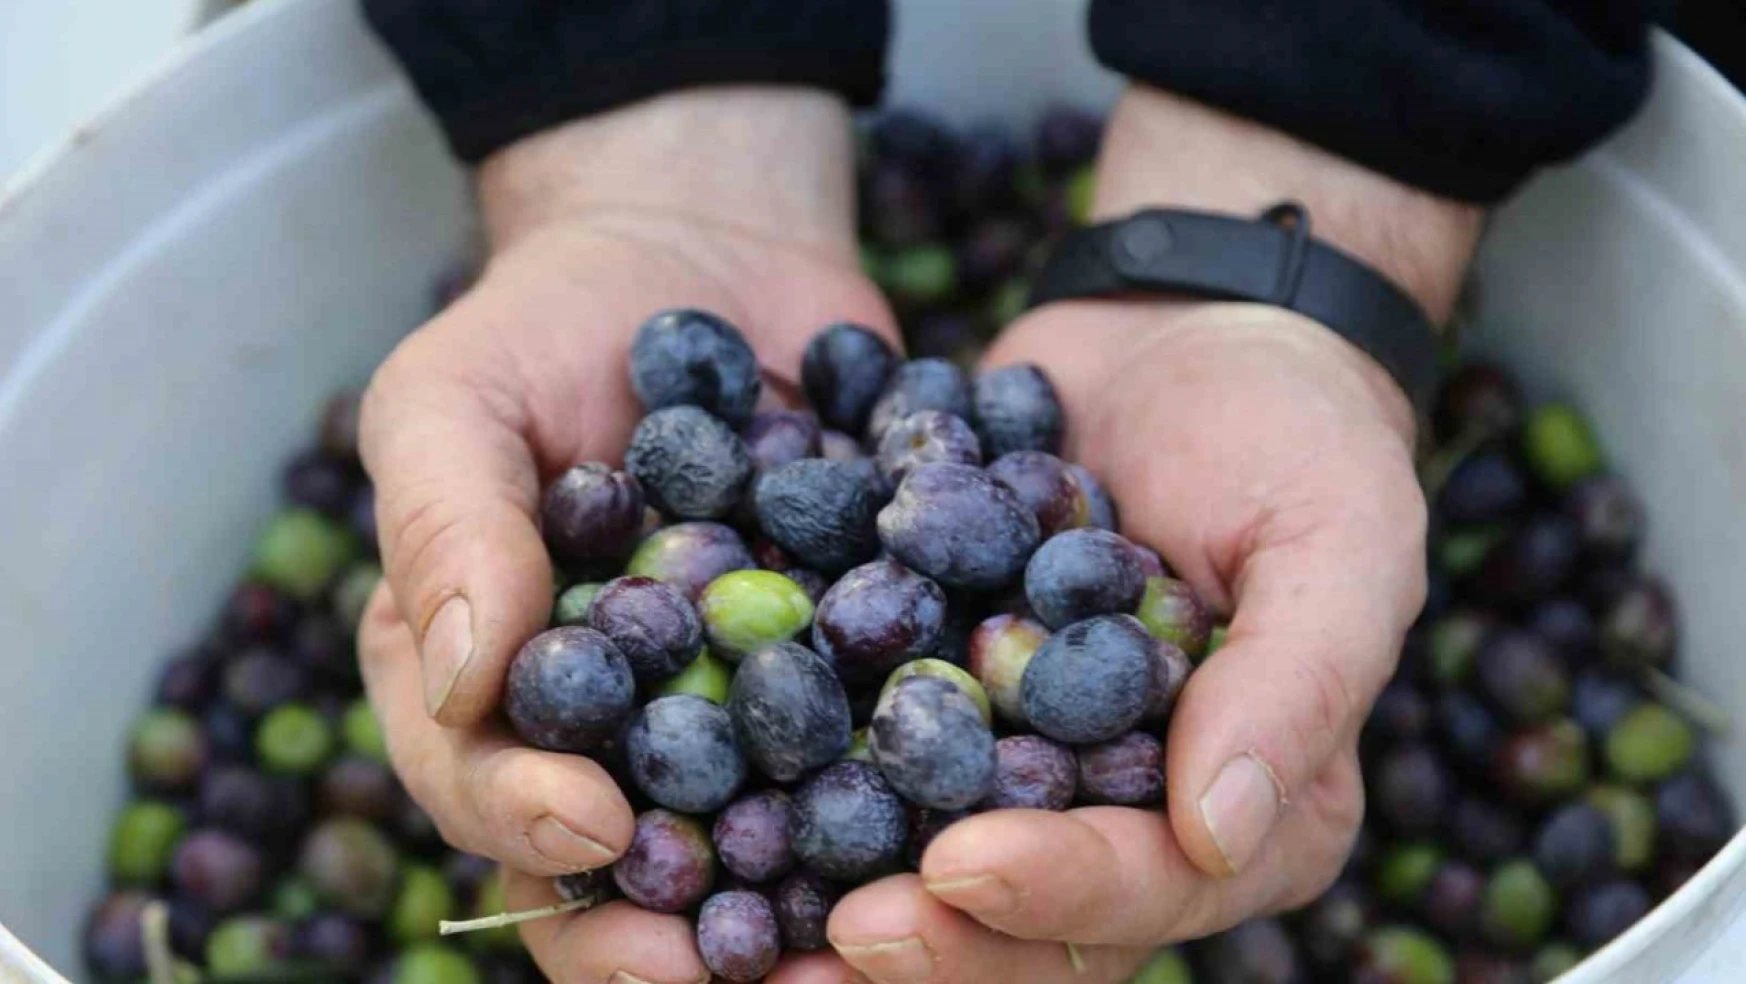 Artvin'in Yusufeli ilçesinin ödüllü Butko zeytininin hasadına başlandı